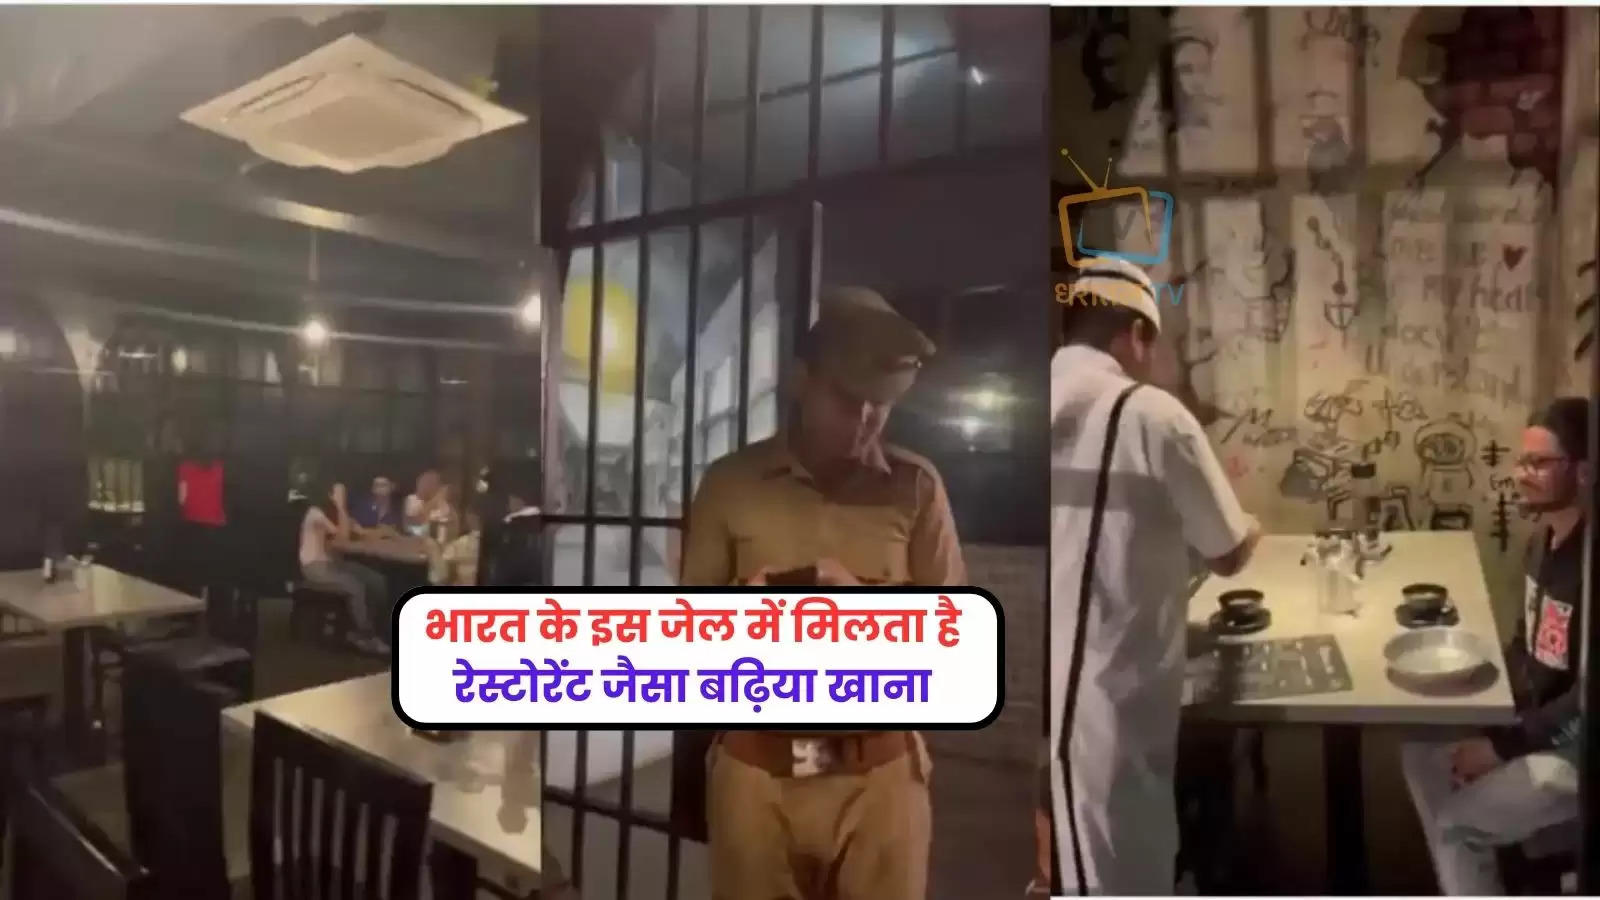 jail-theme-restaurant-in-bengaluru-video-goes-vira